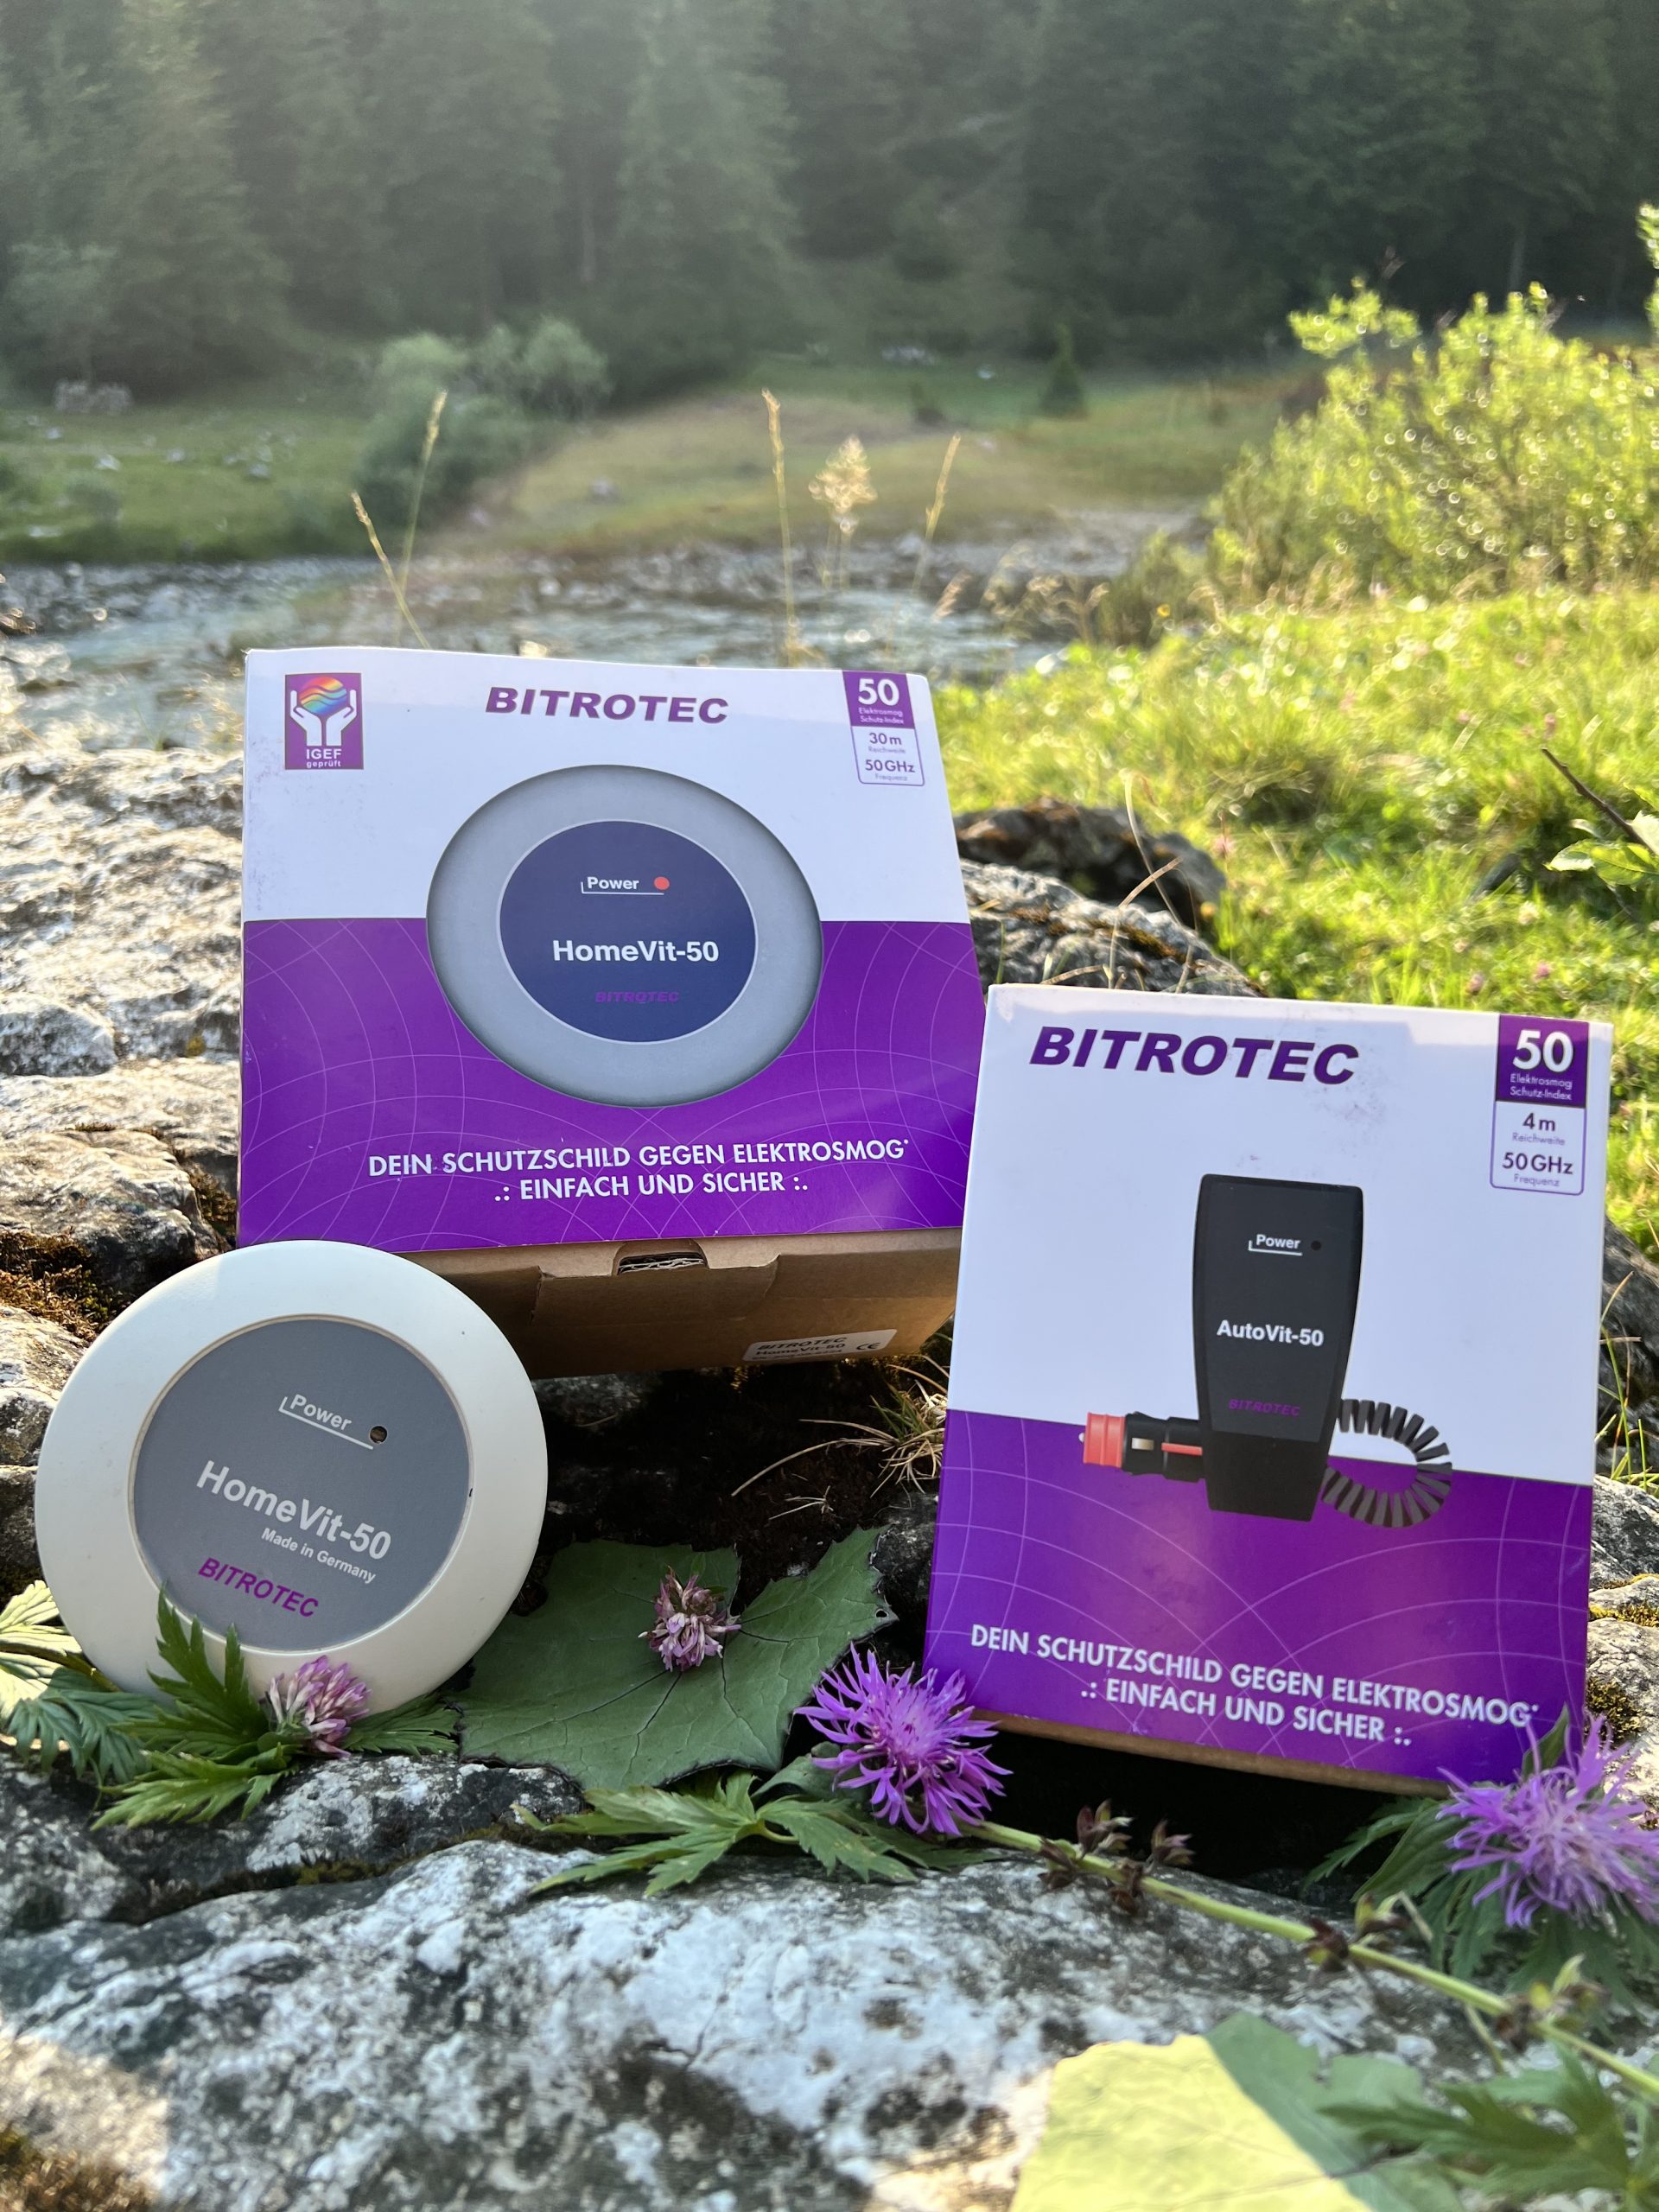 Bitrotec bietet zertifizierte Elektrosmog-Abschirmung für zu Hause